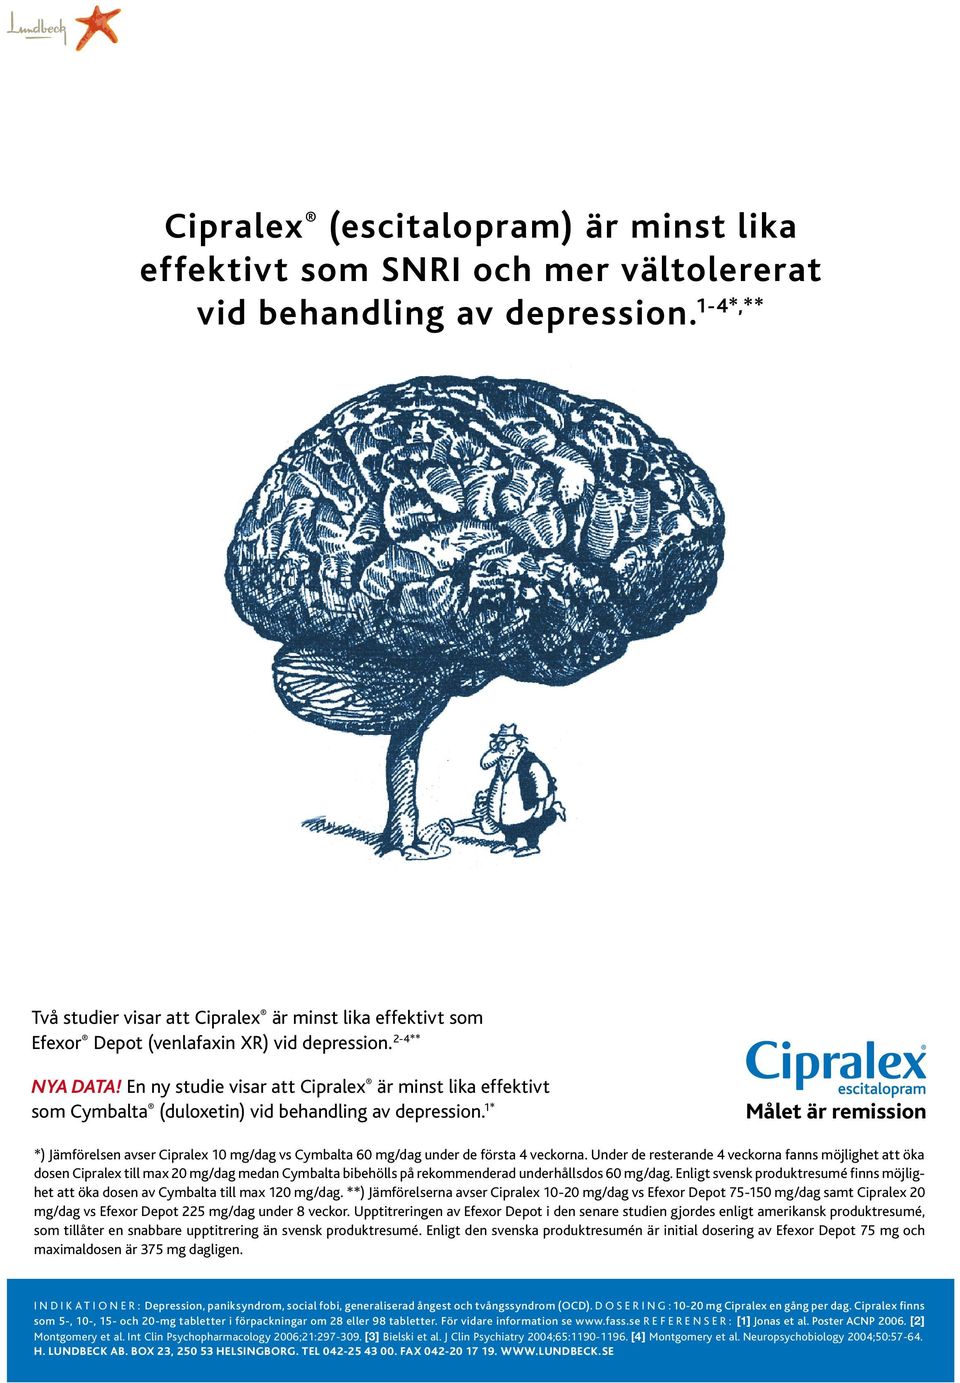 En ny studie visar att Cipralex är minst lika effektivt som Cymbalta (duloxetin) vid behandling av depression.